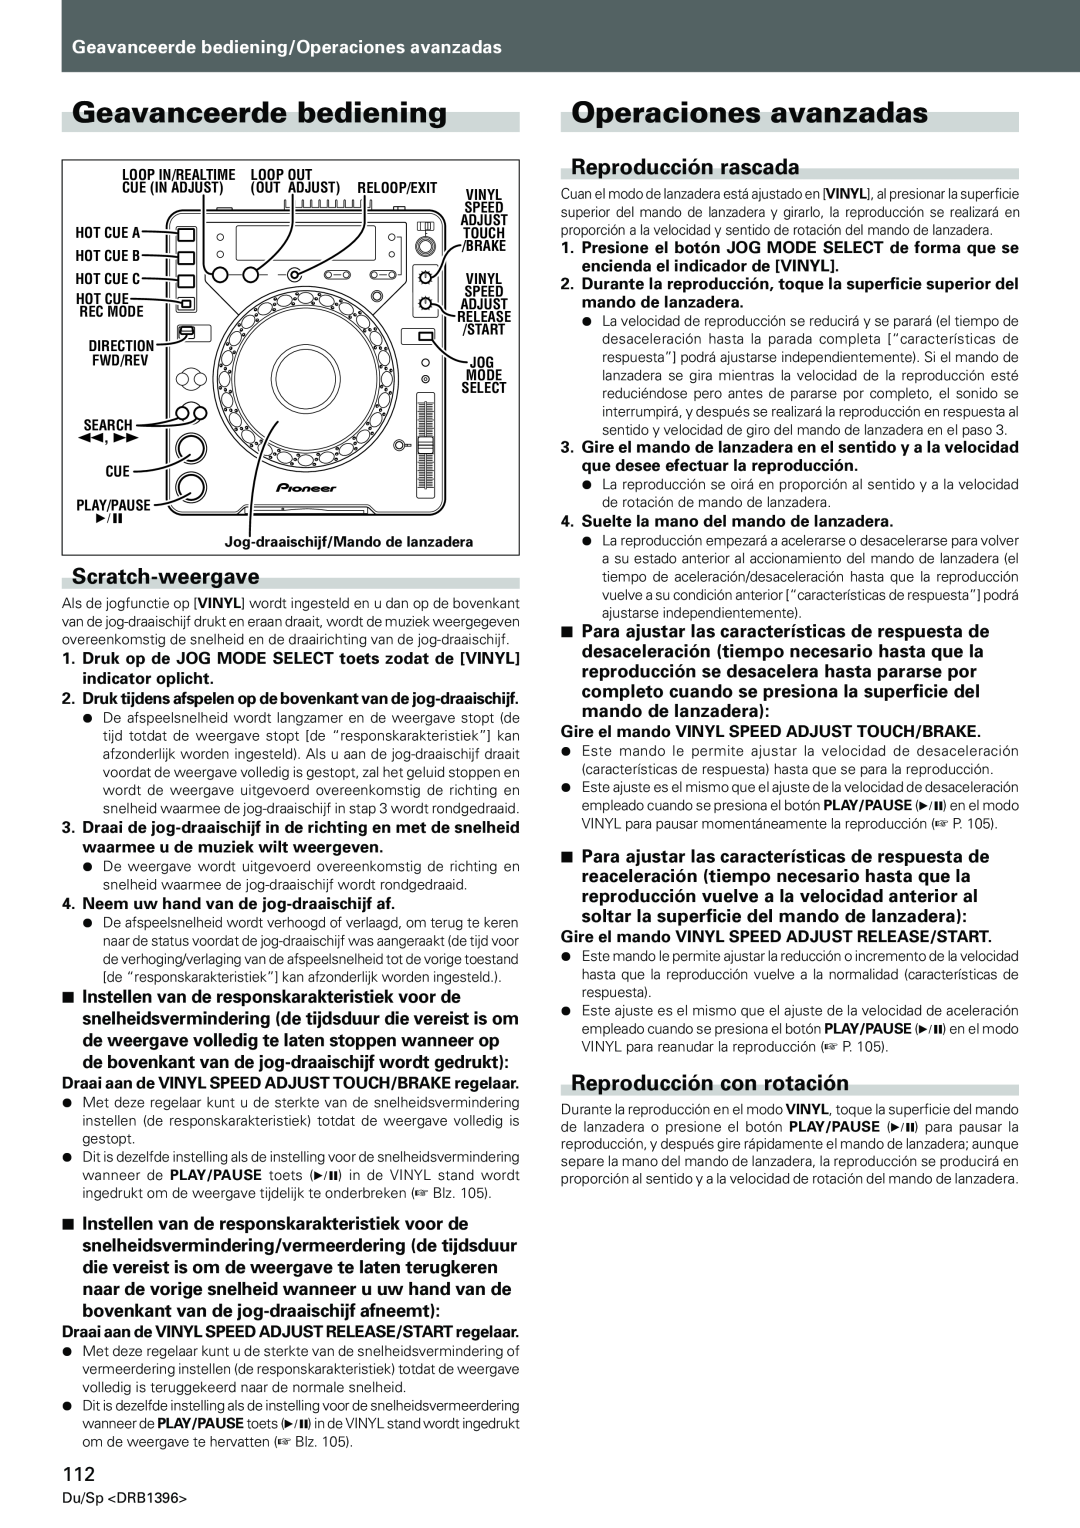 Pioneer CDJ-1000MK3 manual Geavanceerde bediening, Operaciones avanzadas, Scratch-weergave, Reproducción rascada 